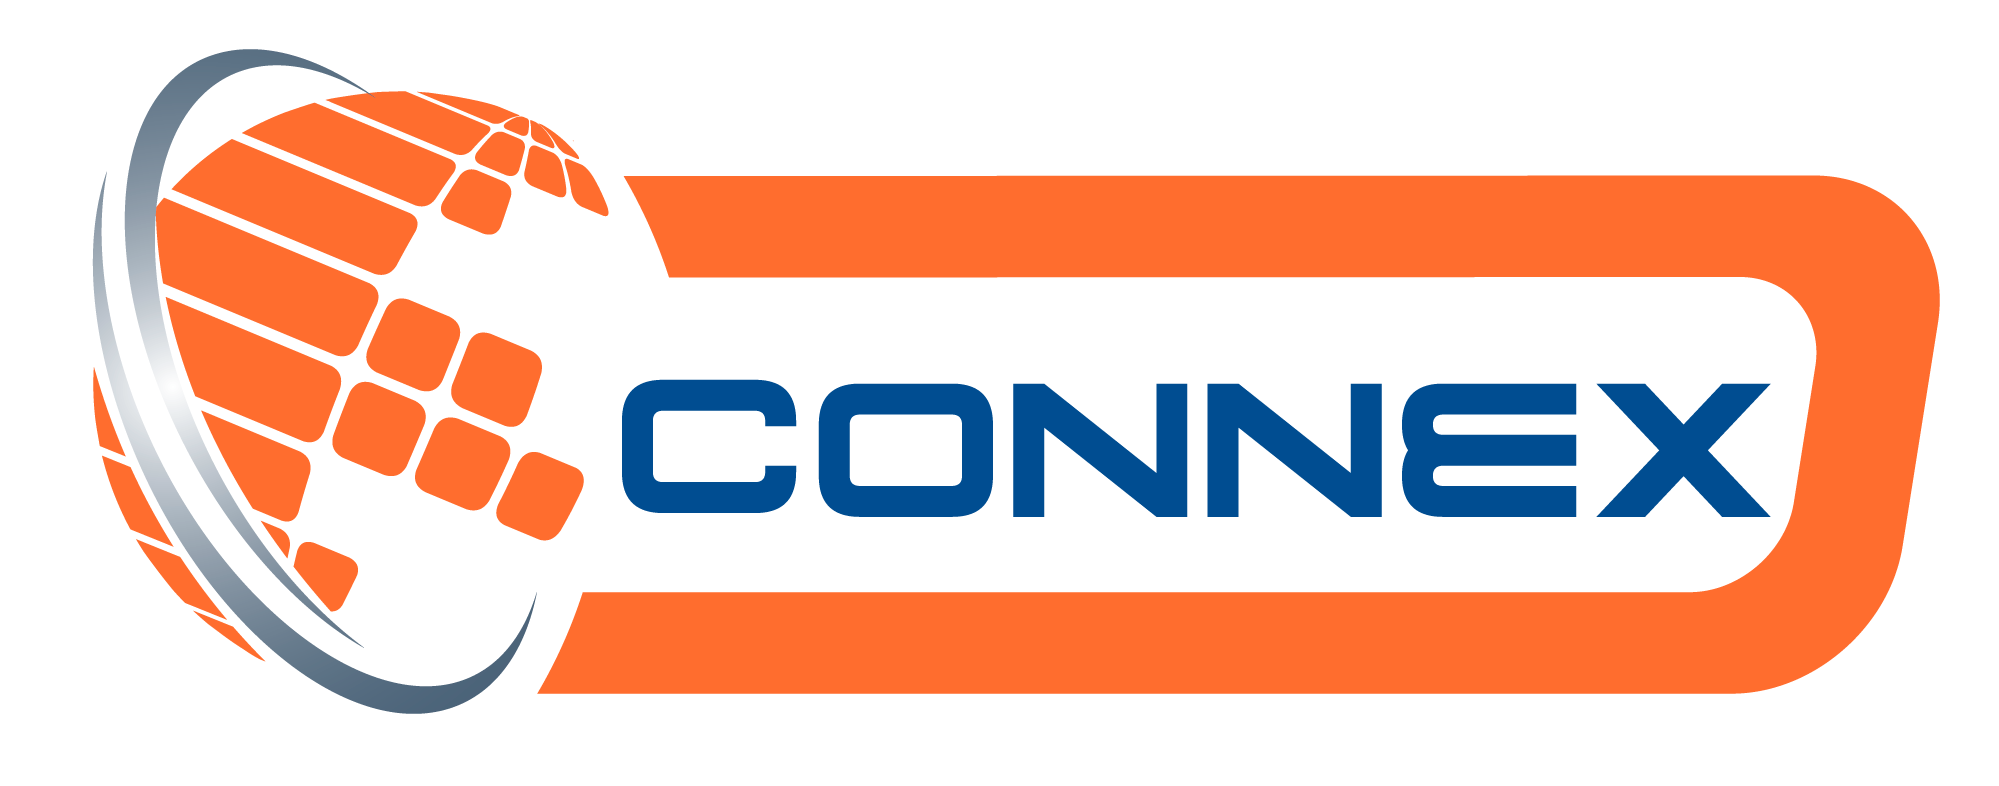 Connex